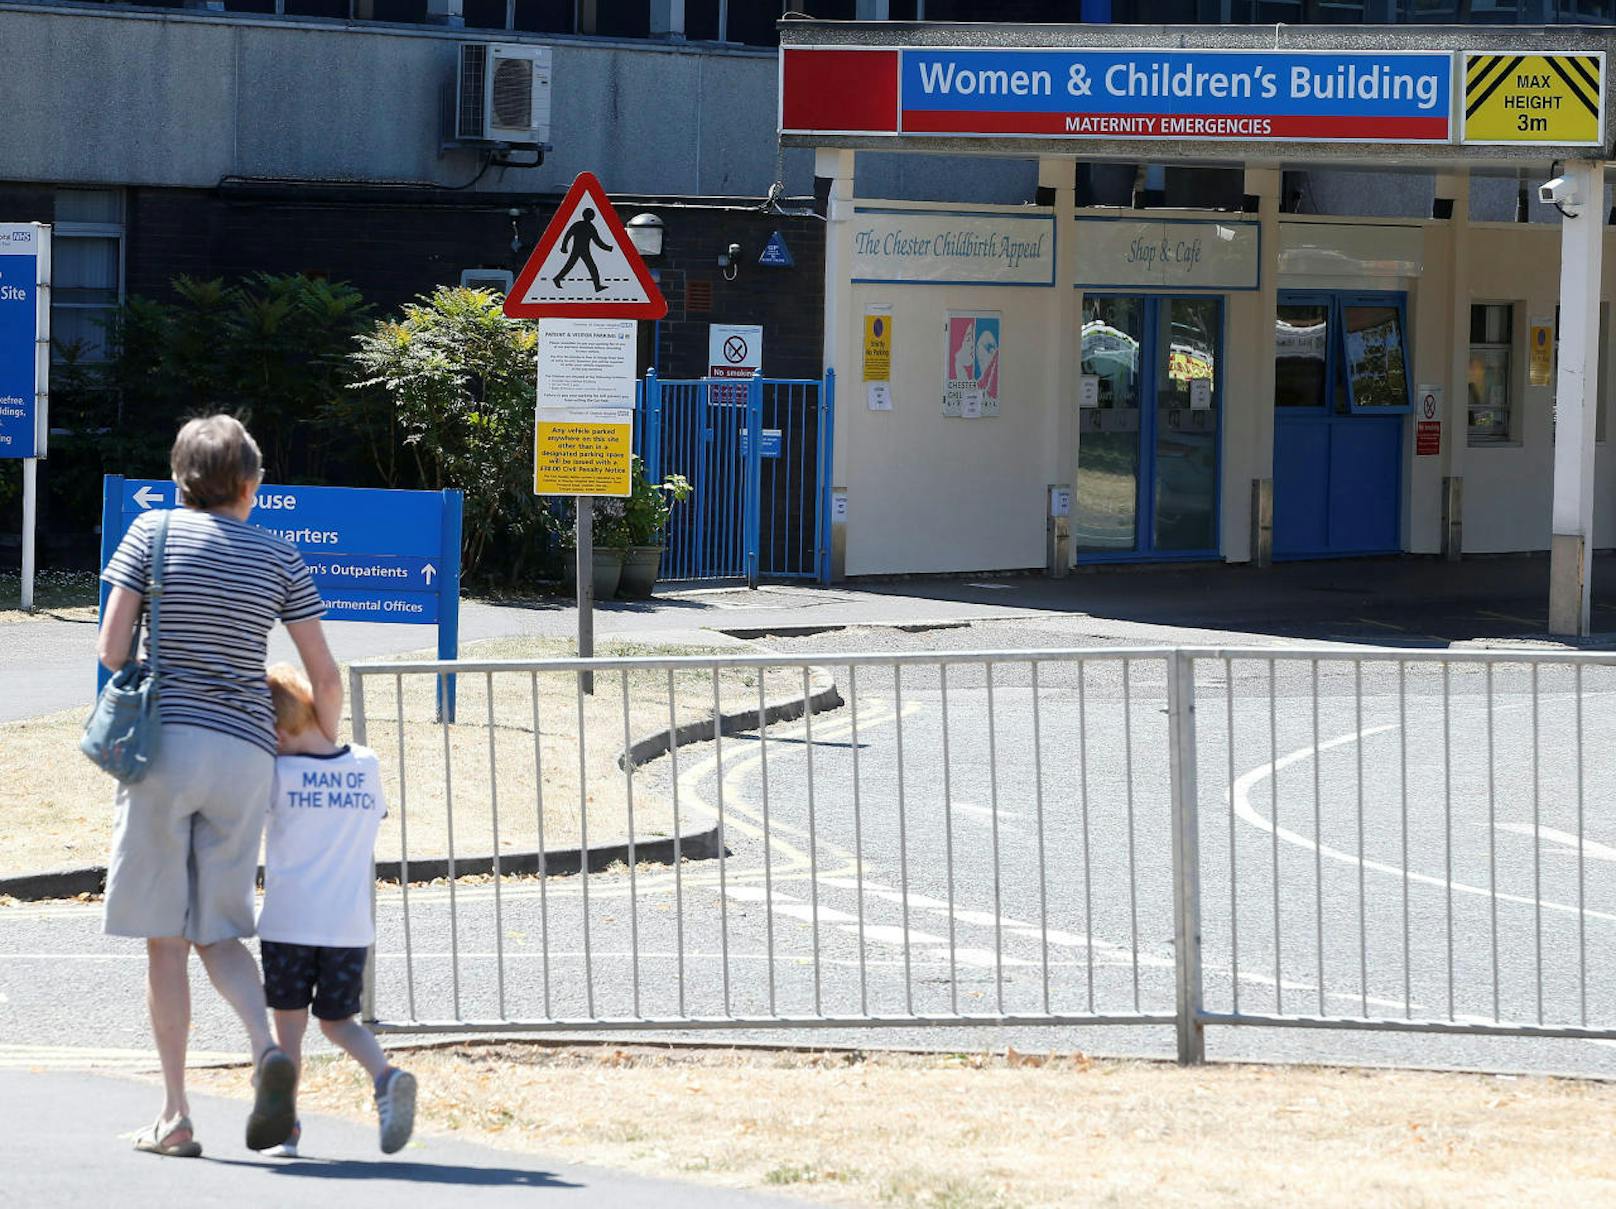 Eine Mitarbeiterin eines Krankenhauses in Großbritannien wird beschuldigt, mehrere Neugeborene getötet zu haben. Das Krankenhaus ...